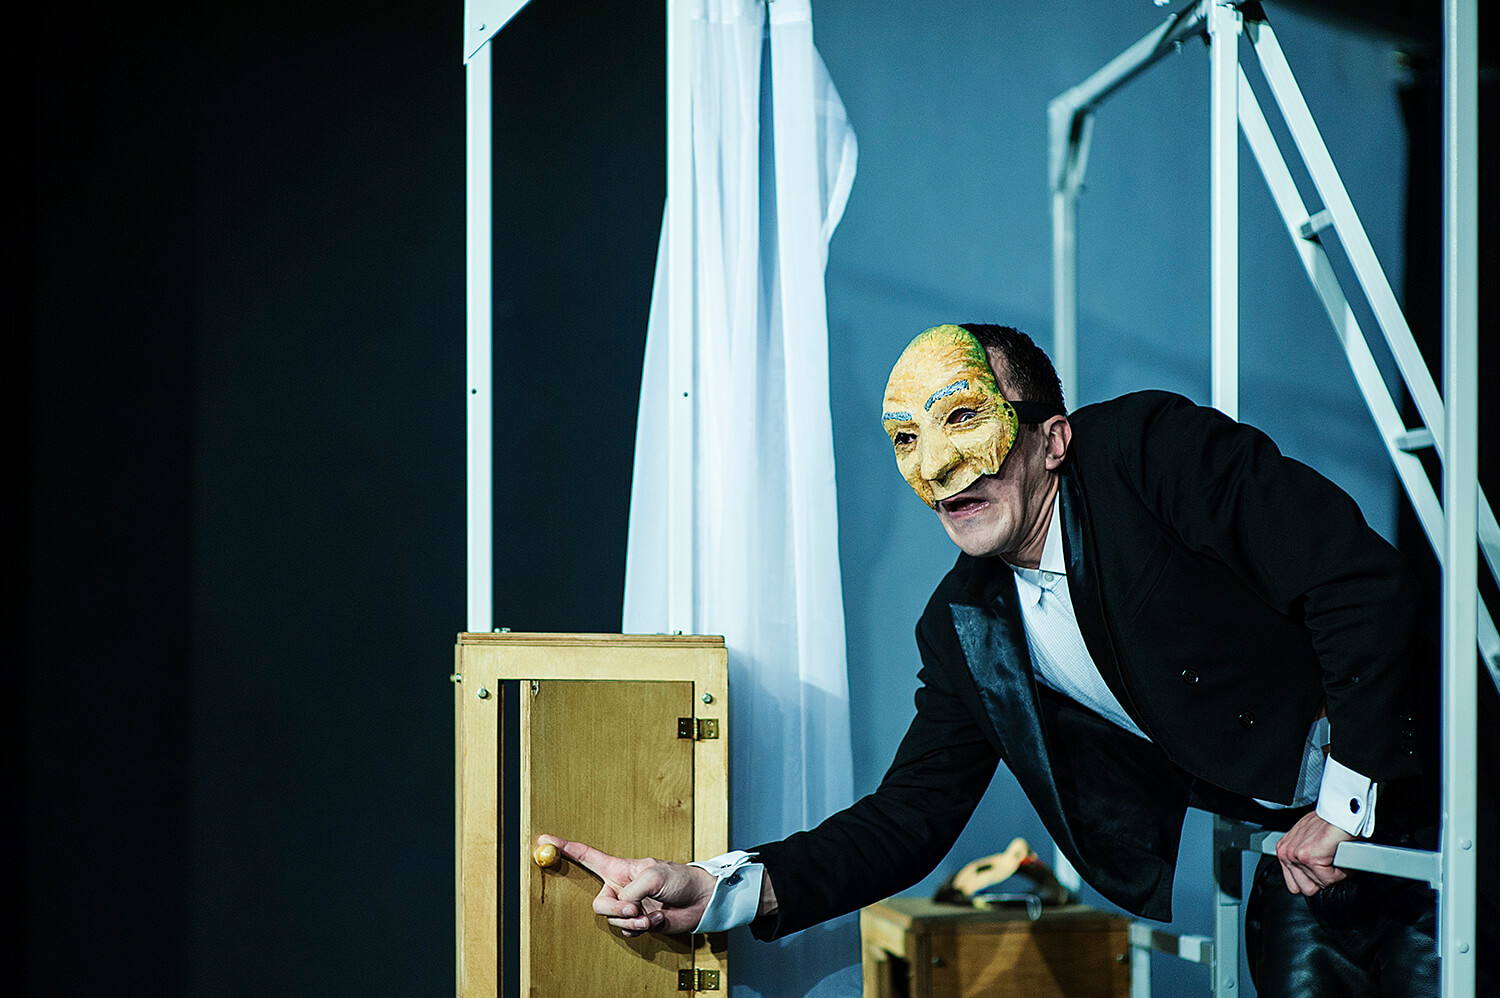 Zdjęcie ze spektaklu Pan Kot. Przedsawia aktora w e fraku, bez koszuli z maską w stylu komedii de larte na twarzy.